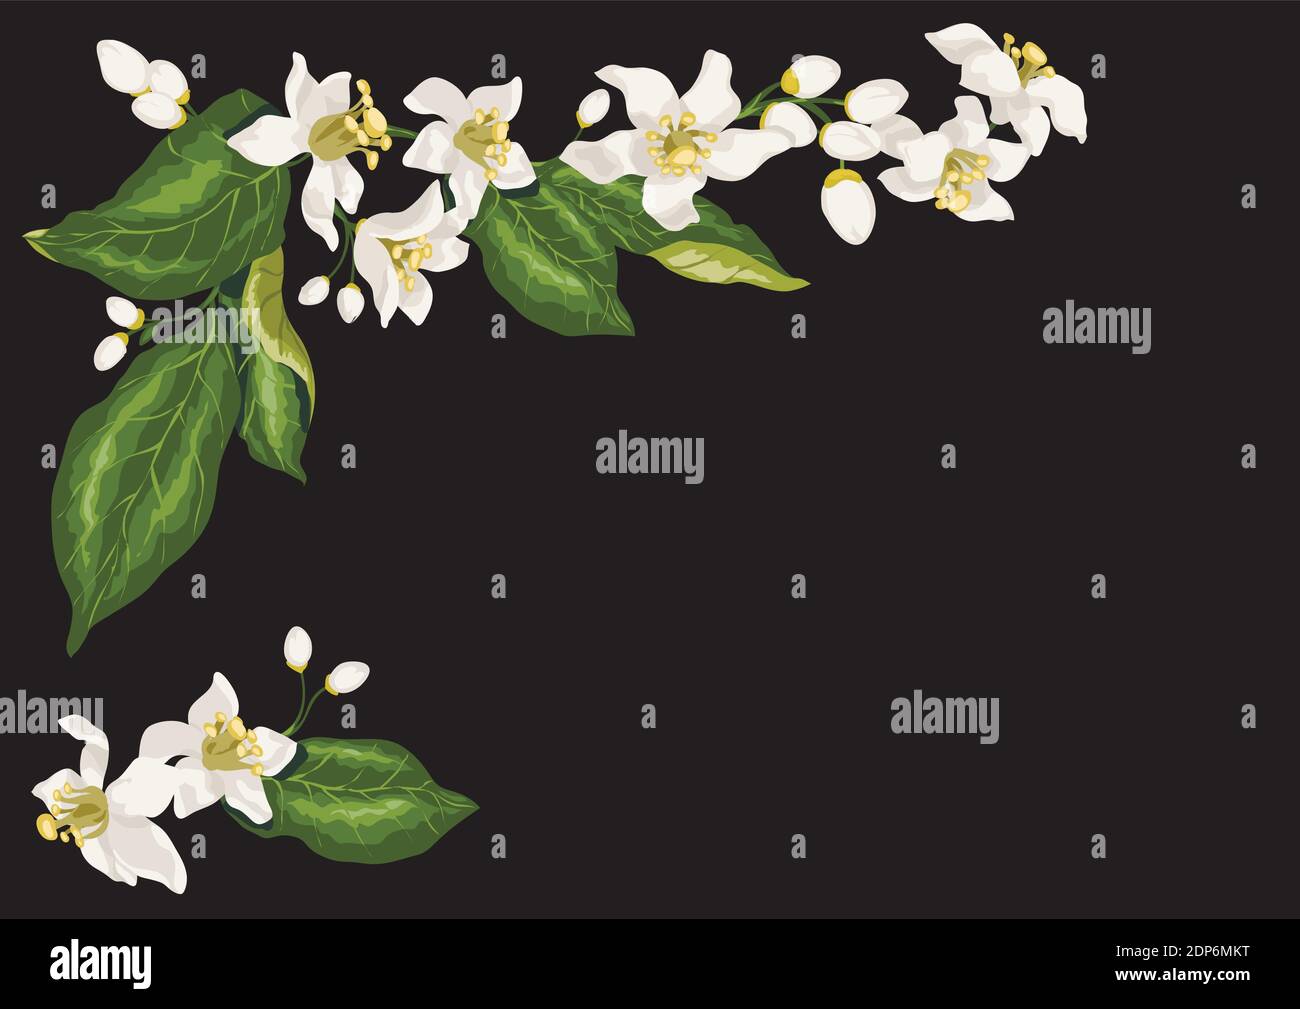 Rahmen für Postkarte mit Zweigen von Zitrusfrüchten Zitrone blühenden Obstbaum mit Blumen. Weiße frische niedliche Blumen von Zitronenbaum Stock Vektor